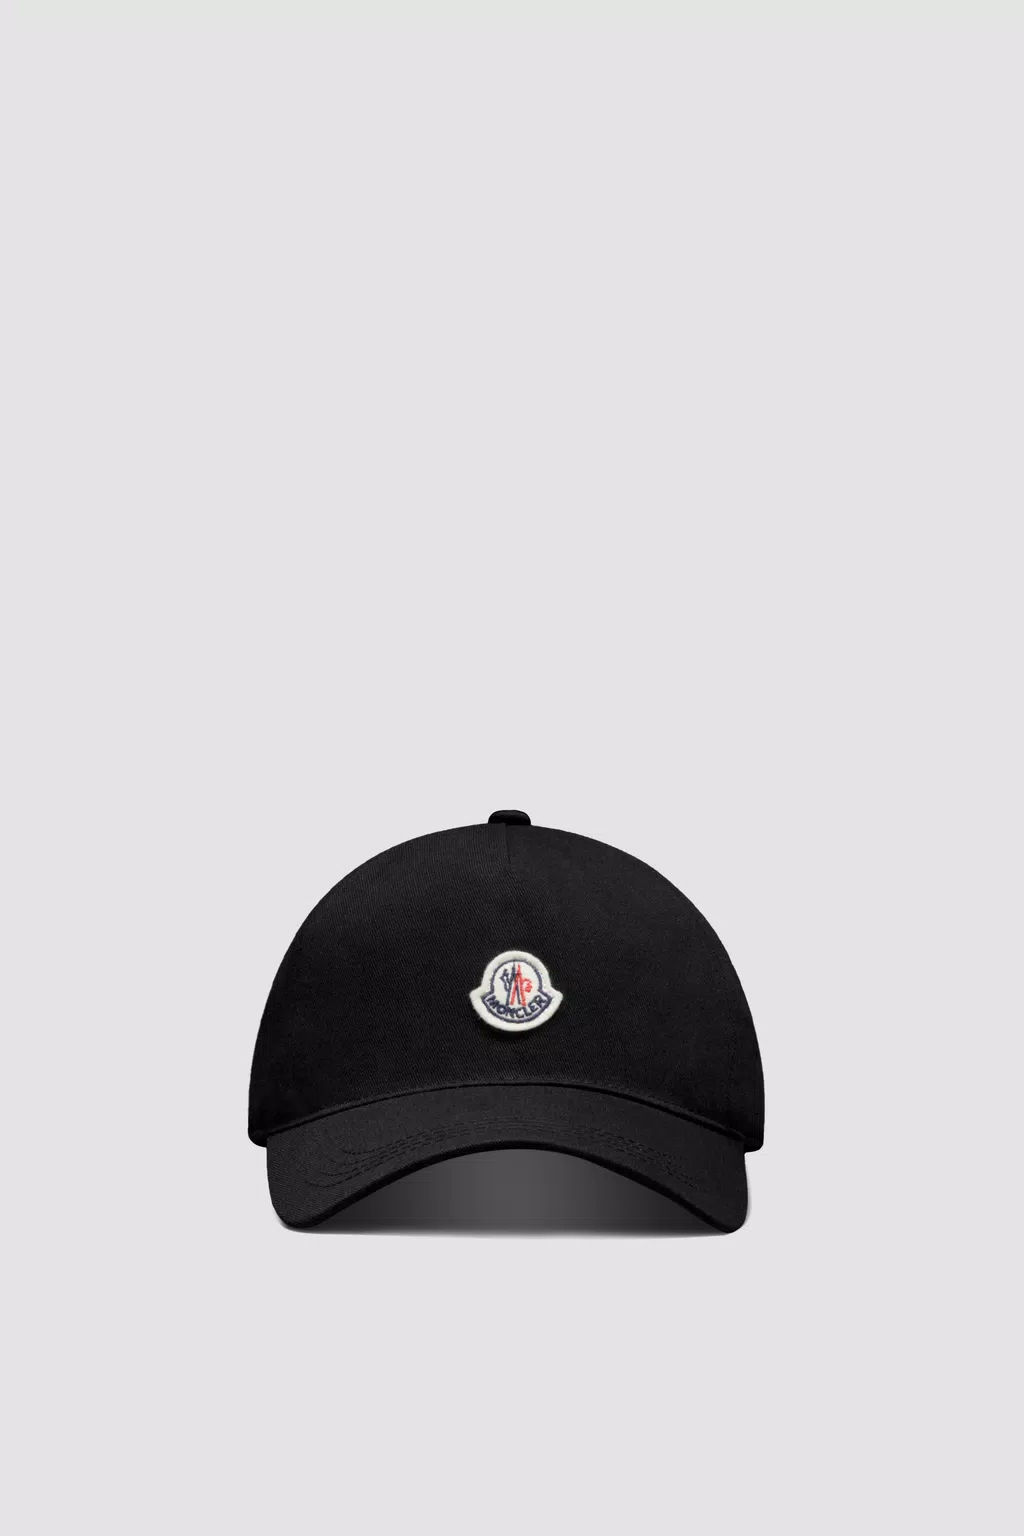 Bucket Hats, Beanies, Caps & Visors for Women | Moncler US